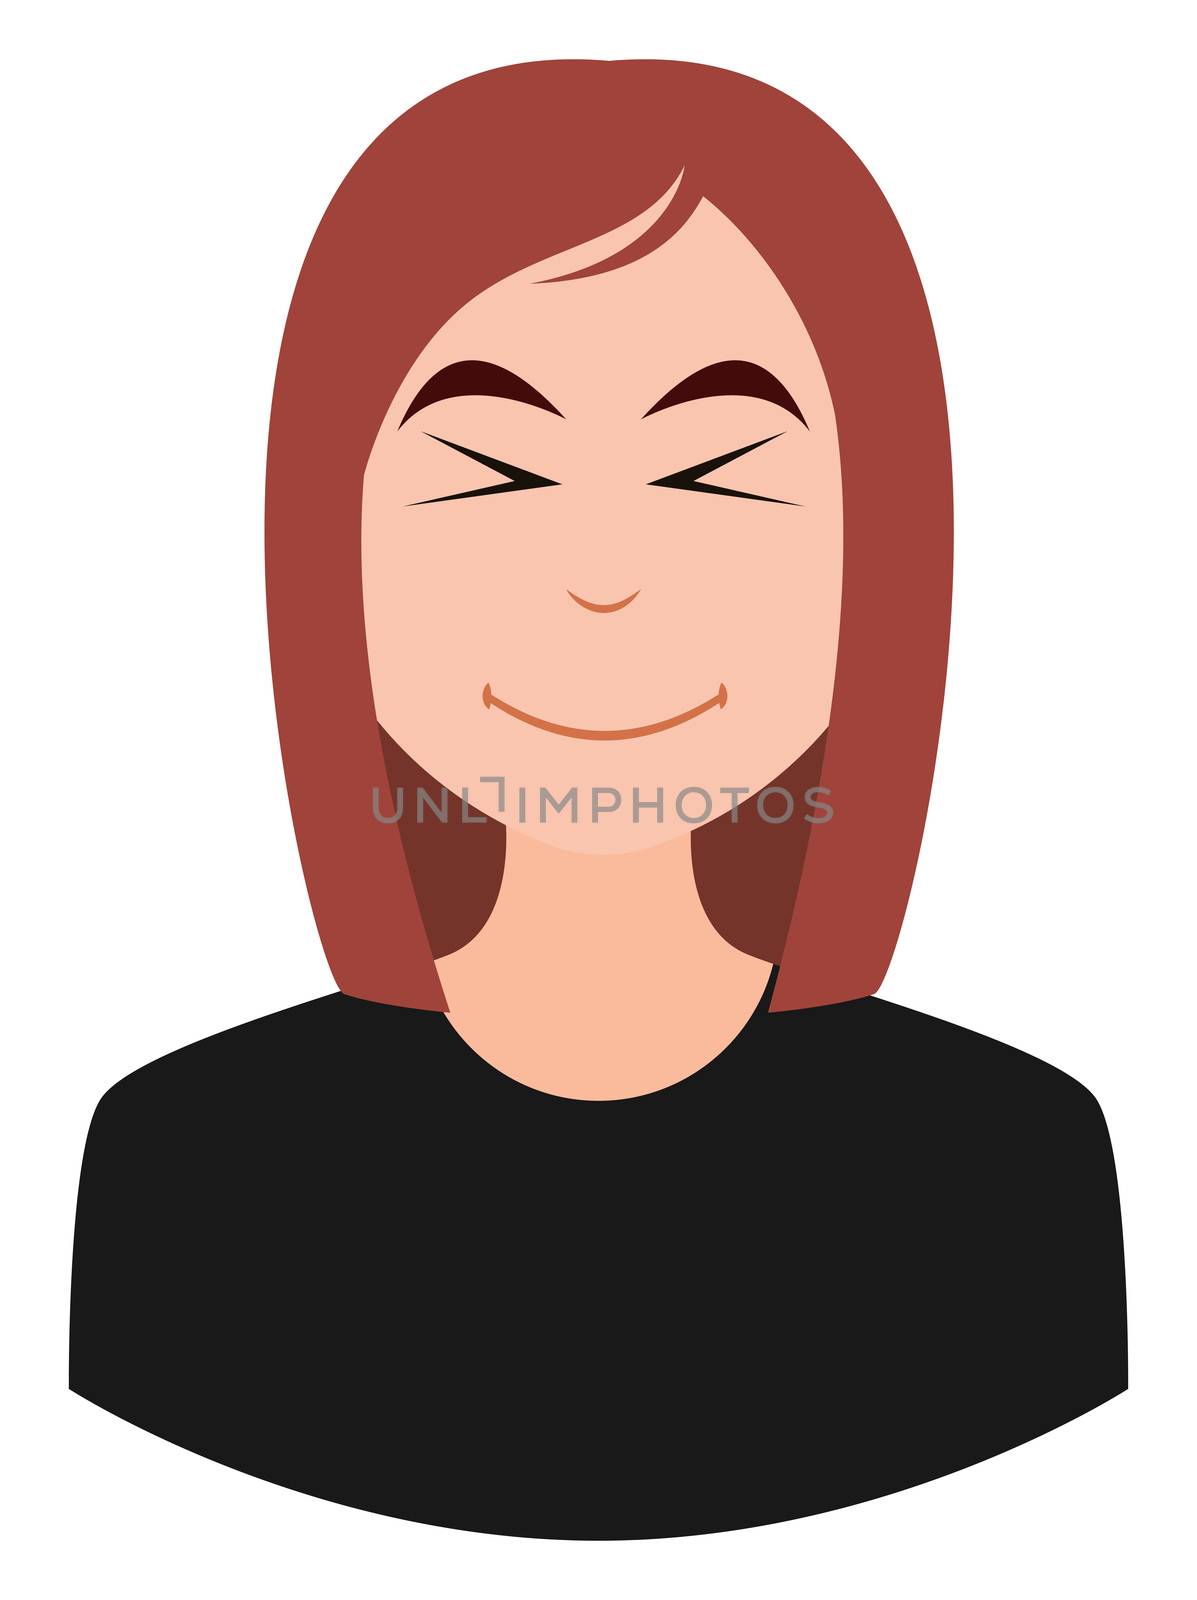 Cute girl emoji, illustration, vector on white background by Morphart